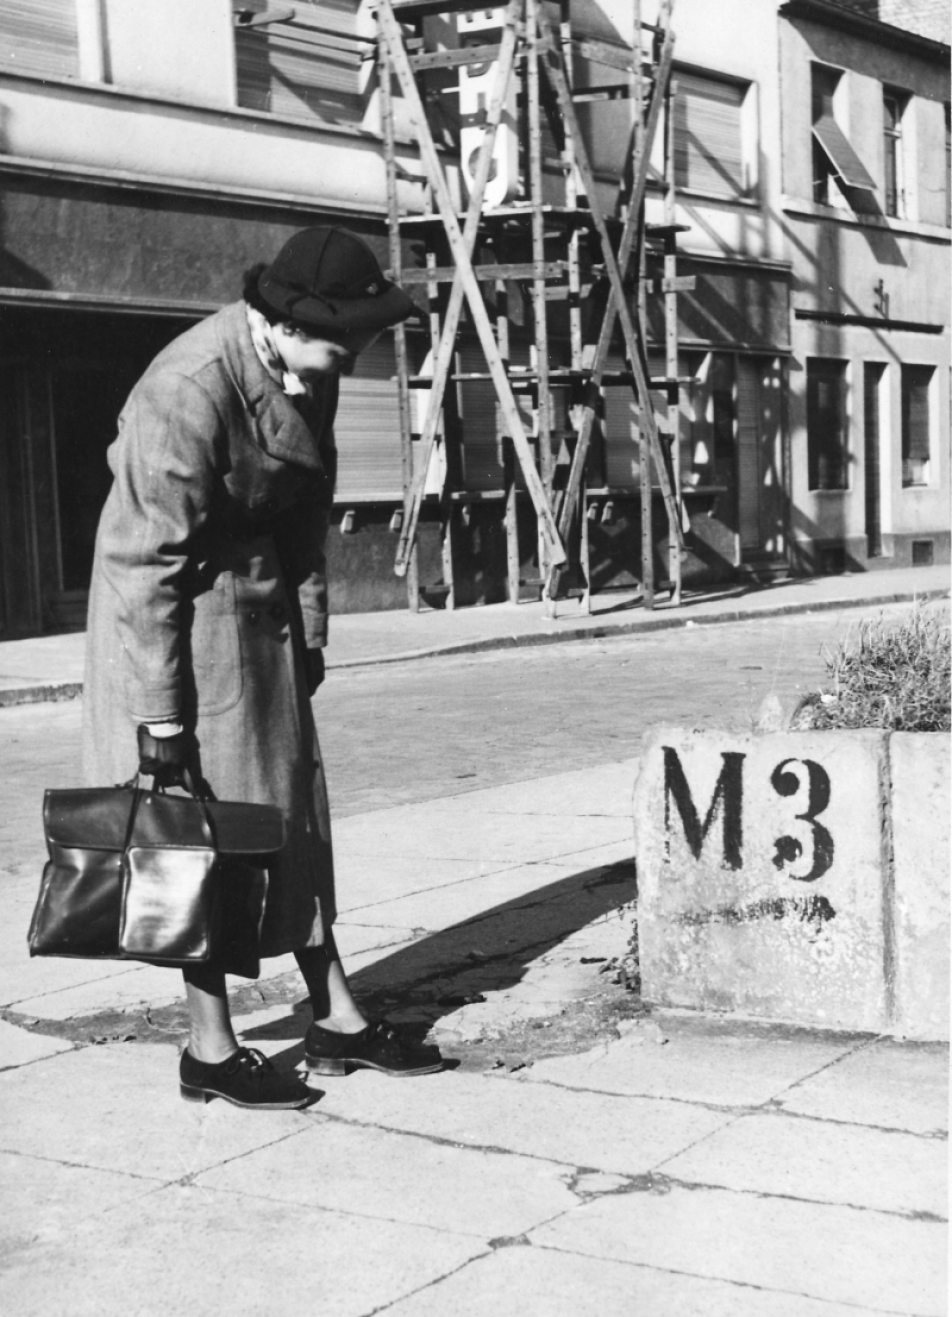 Fotografie in schwarz-weiß zeigt eine Frau mit Hut, Mantel und Tasche auf einer Straße in den Mannheimer Quadraten. Die Person steht leicht gebückt auf de linken Seite und schaut sich einen Mauerrest mit der Bezeichnung M3 an.